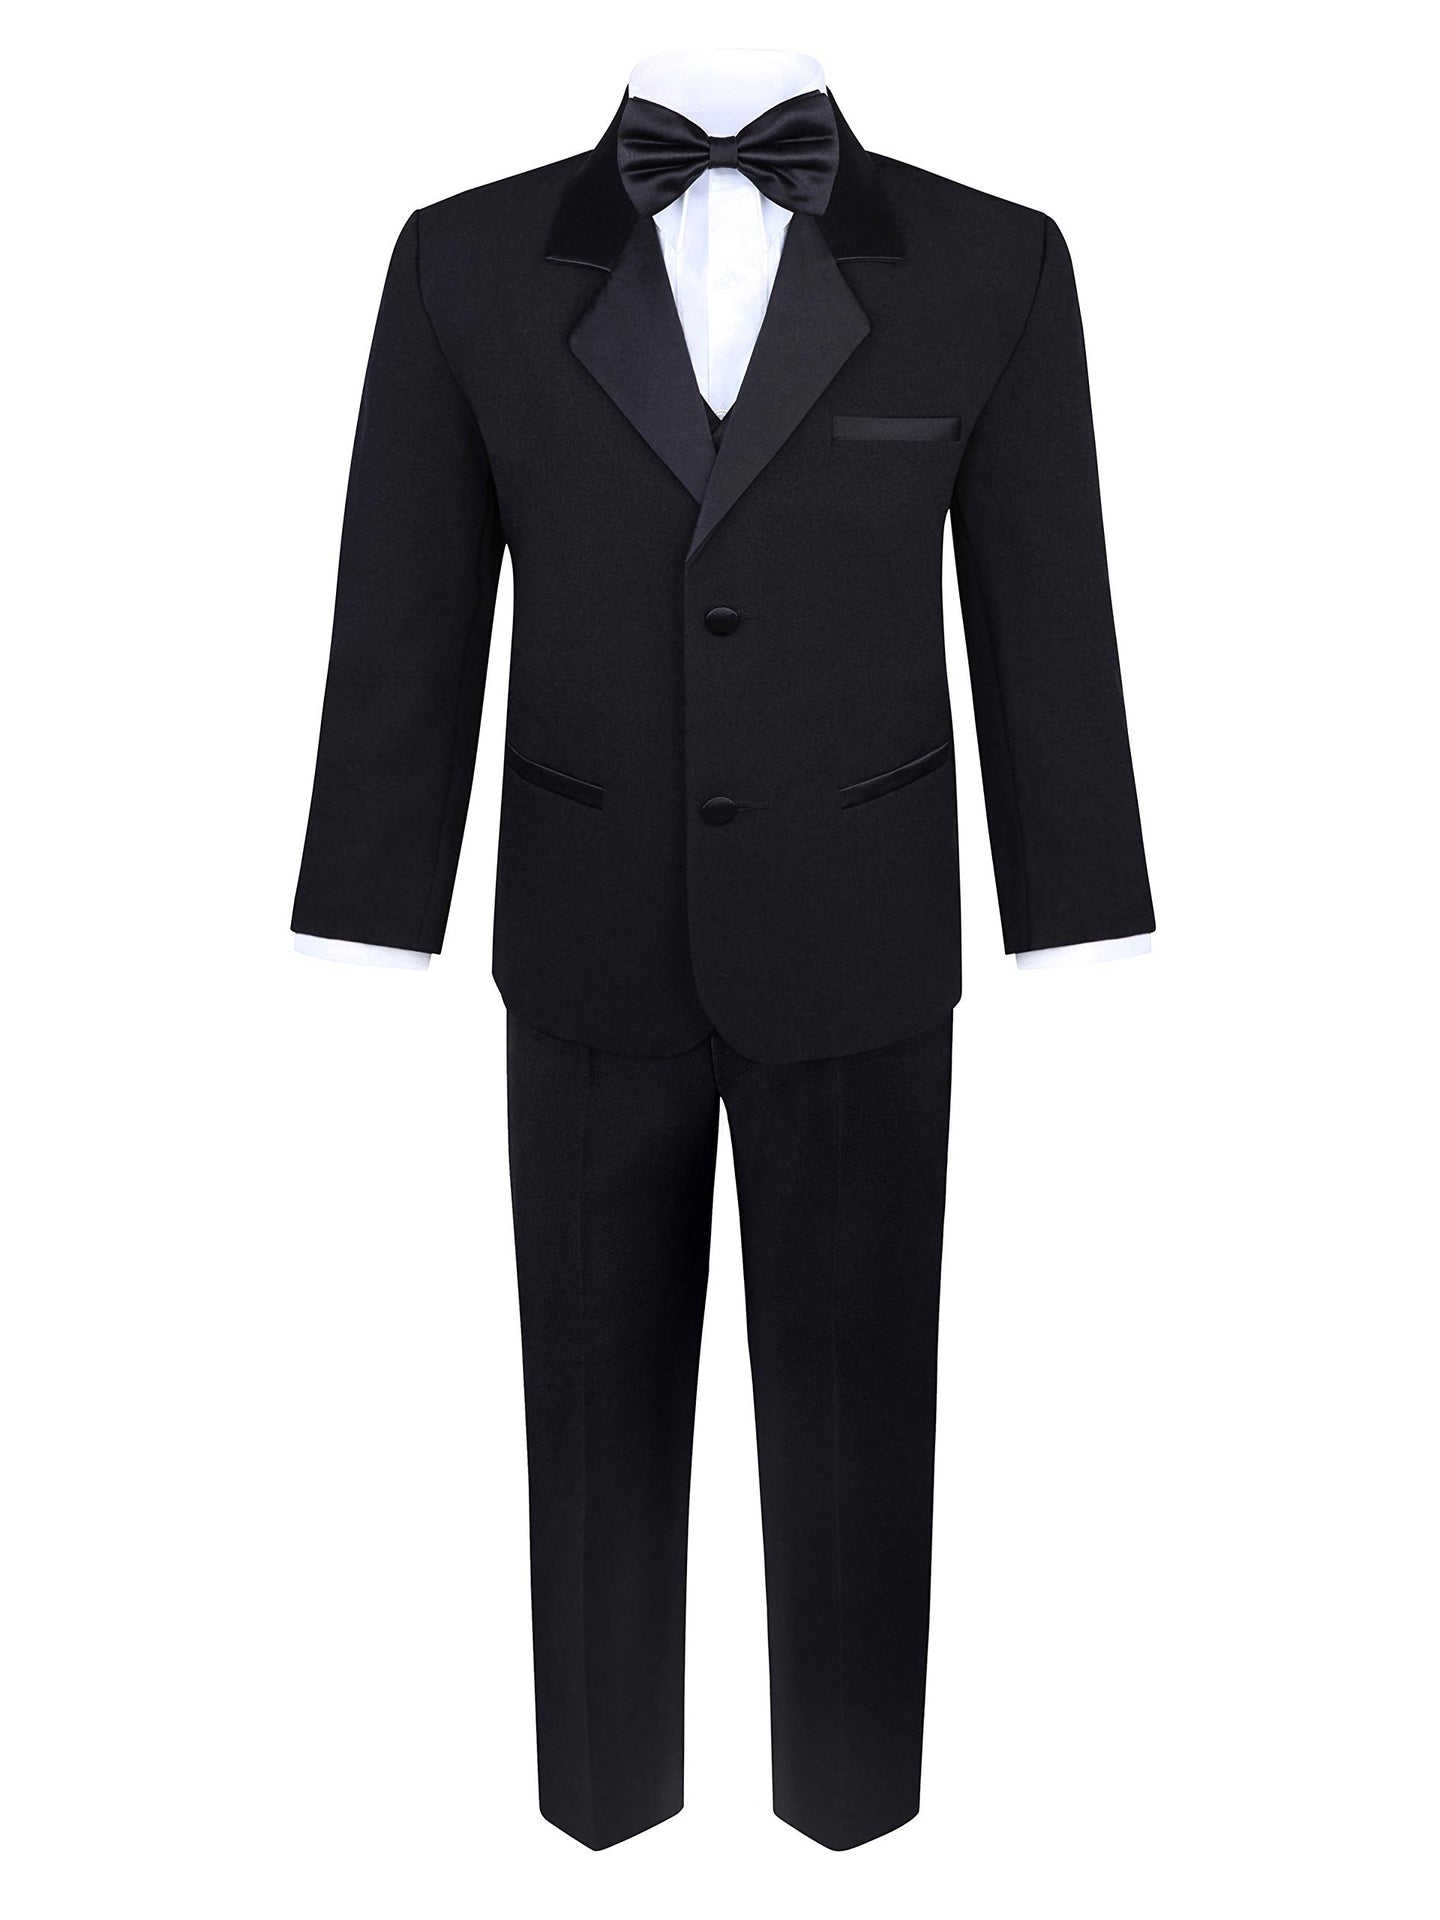 Boys 5 Piece Black Tuxedo Set - Includes Formal Jacket, Pants, Shirt, Vest & Bow Tie - Black